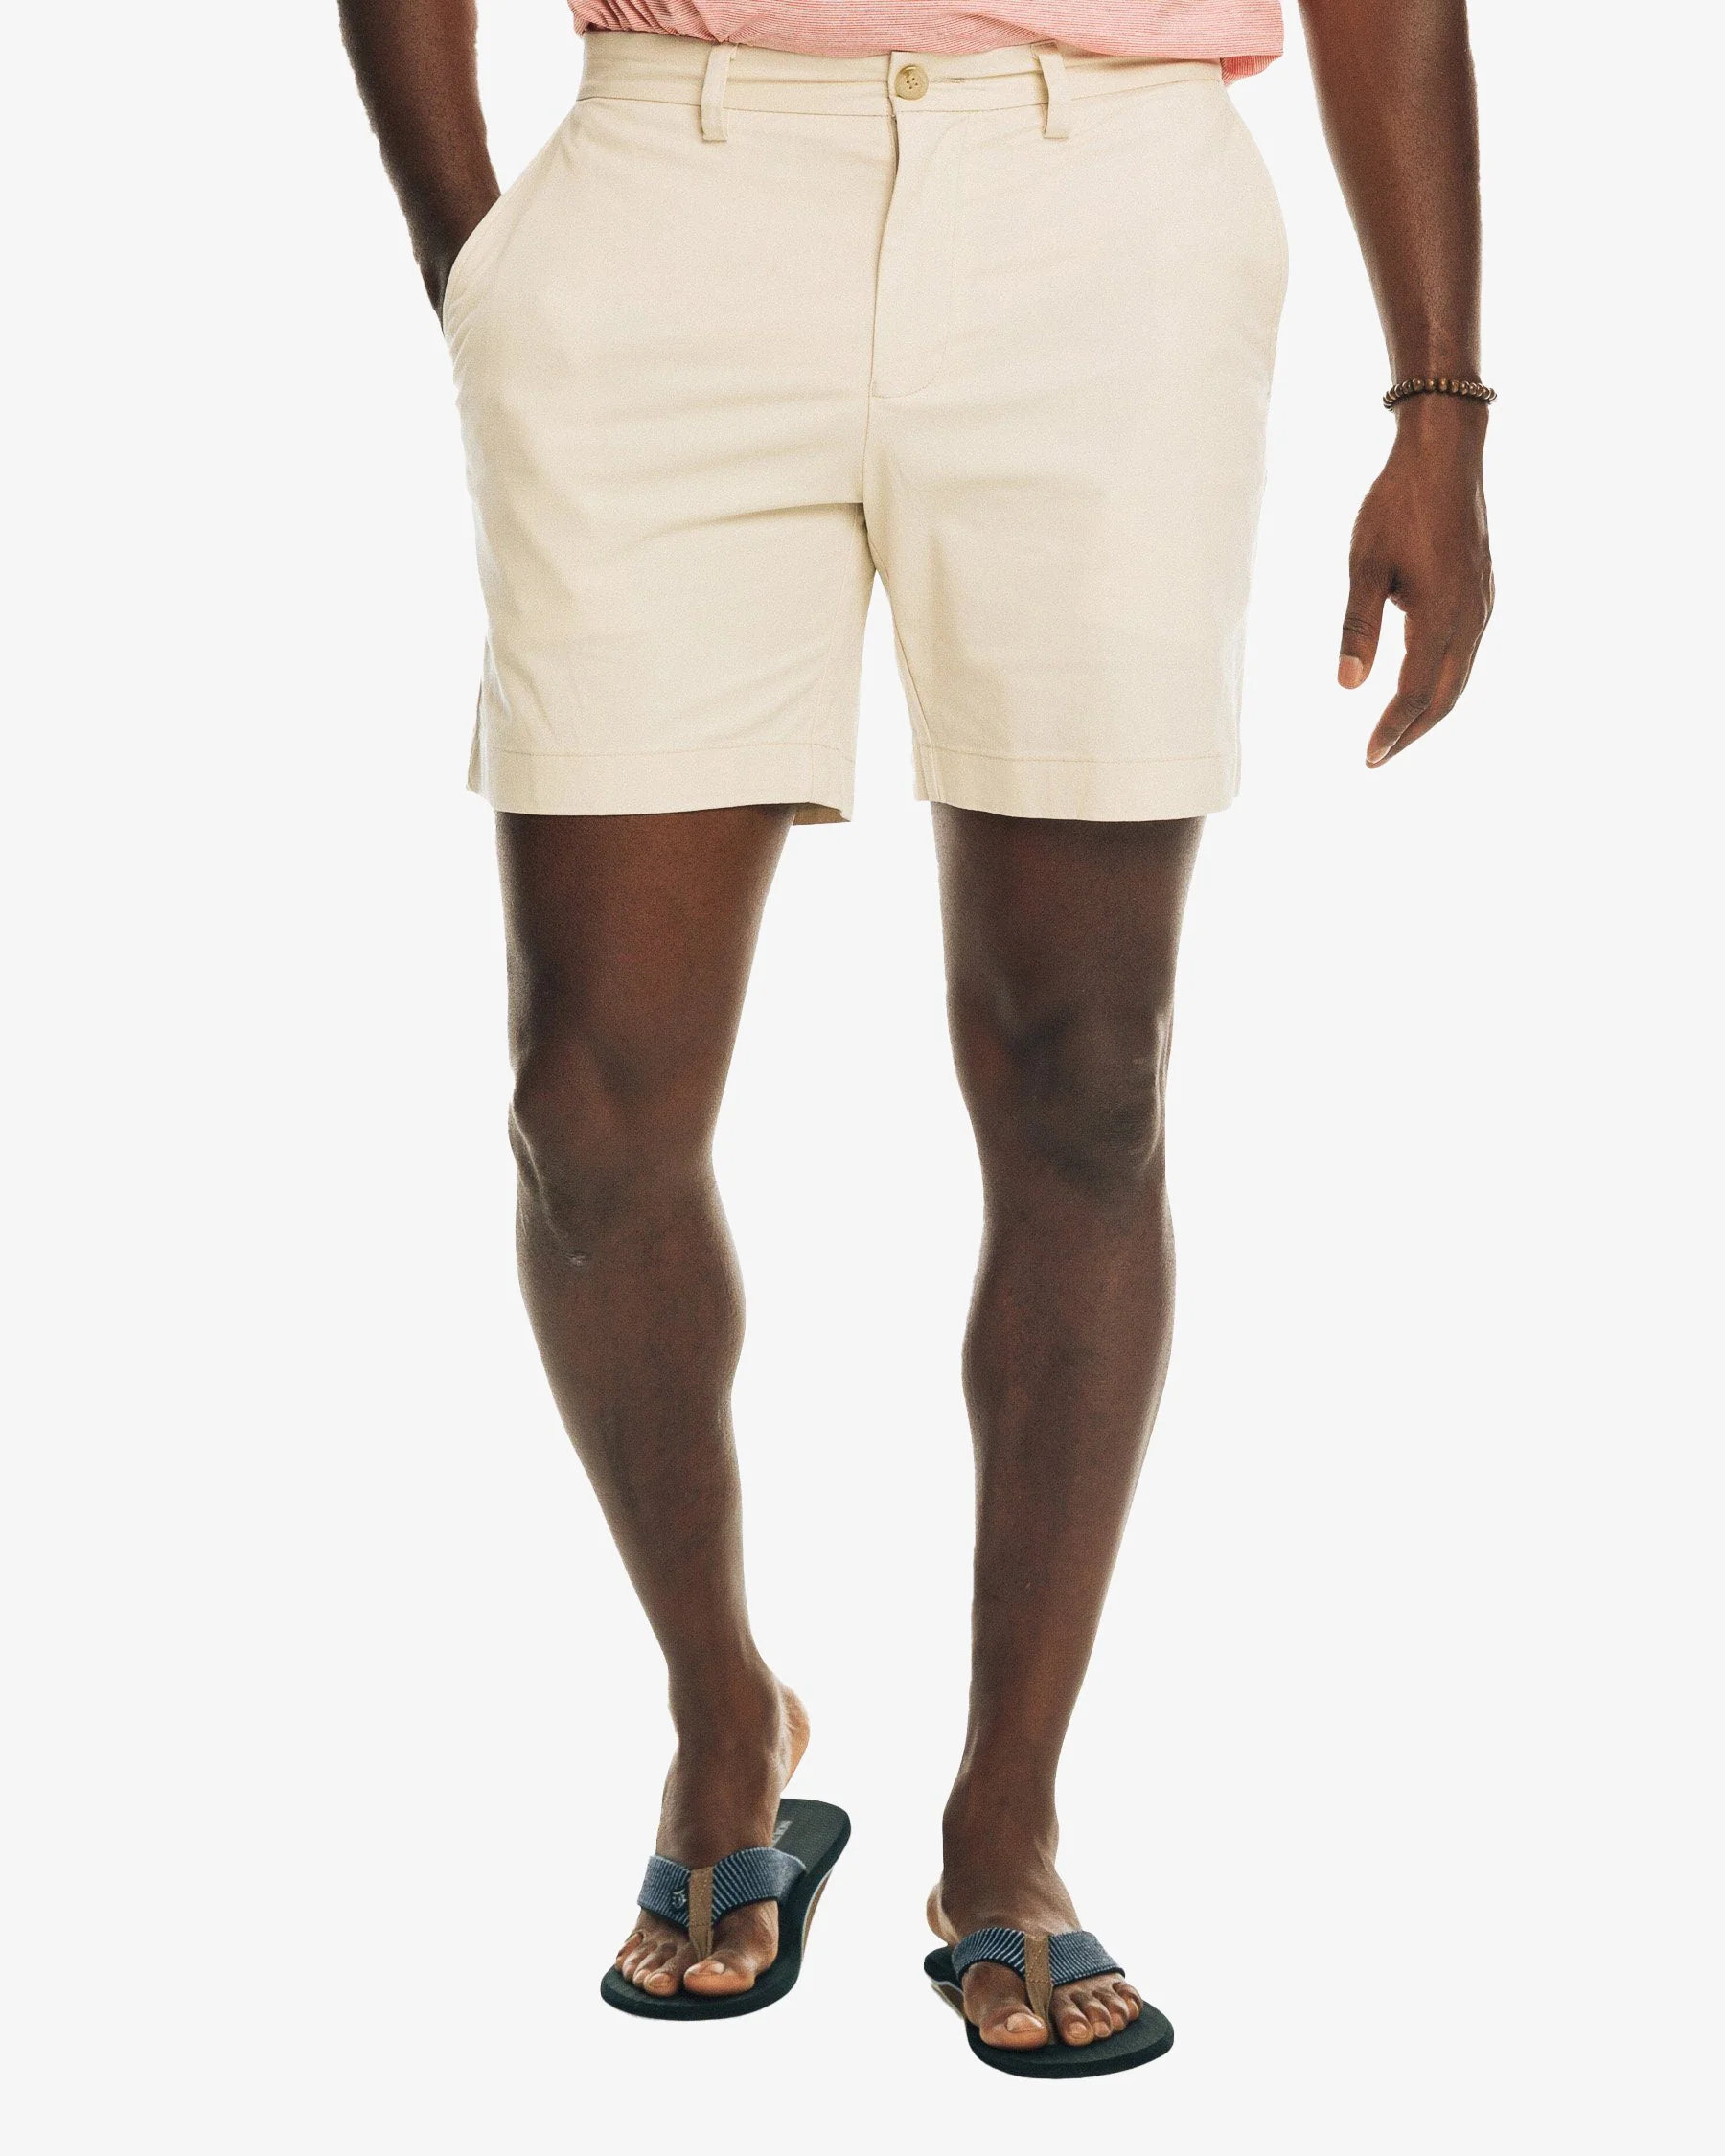 Men’s chino shorts 7 inch inseam: Versatile Wardrobe Essential